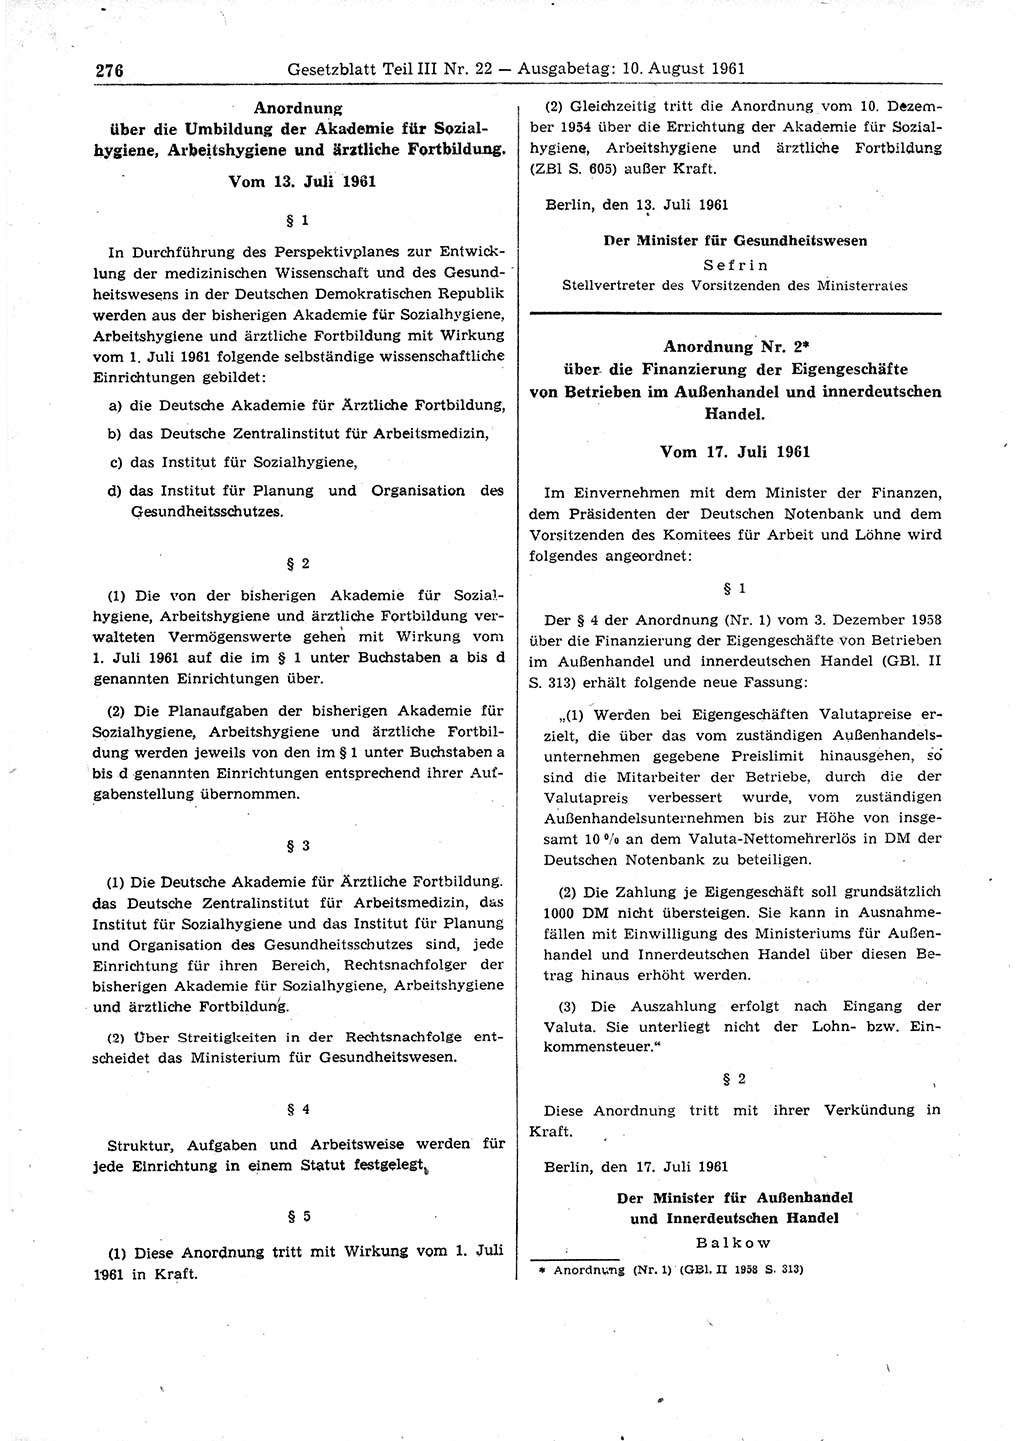 Gesetzblatt (GBl.) der Deutschen Demokratischen Republik (DDR) Teil ⅠⅠⅠ 1961, Seite 276 (GBl. DDR ⅠⅠⅠ 1961, S. 276)